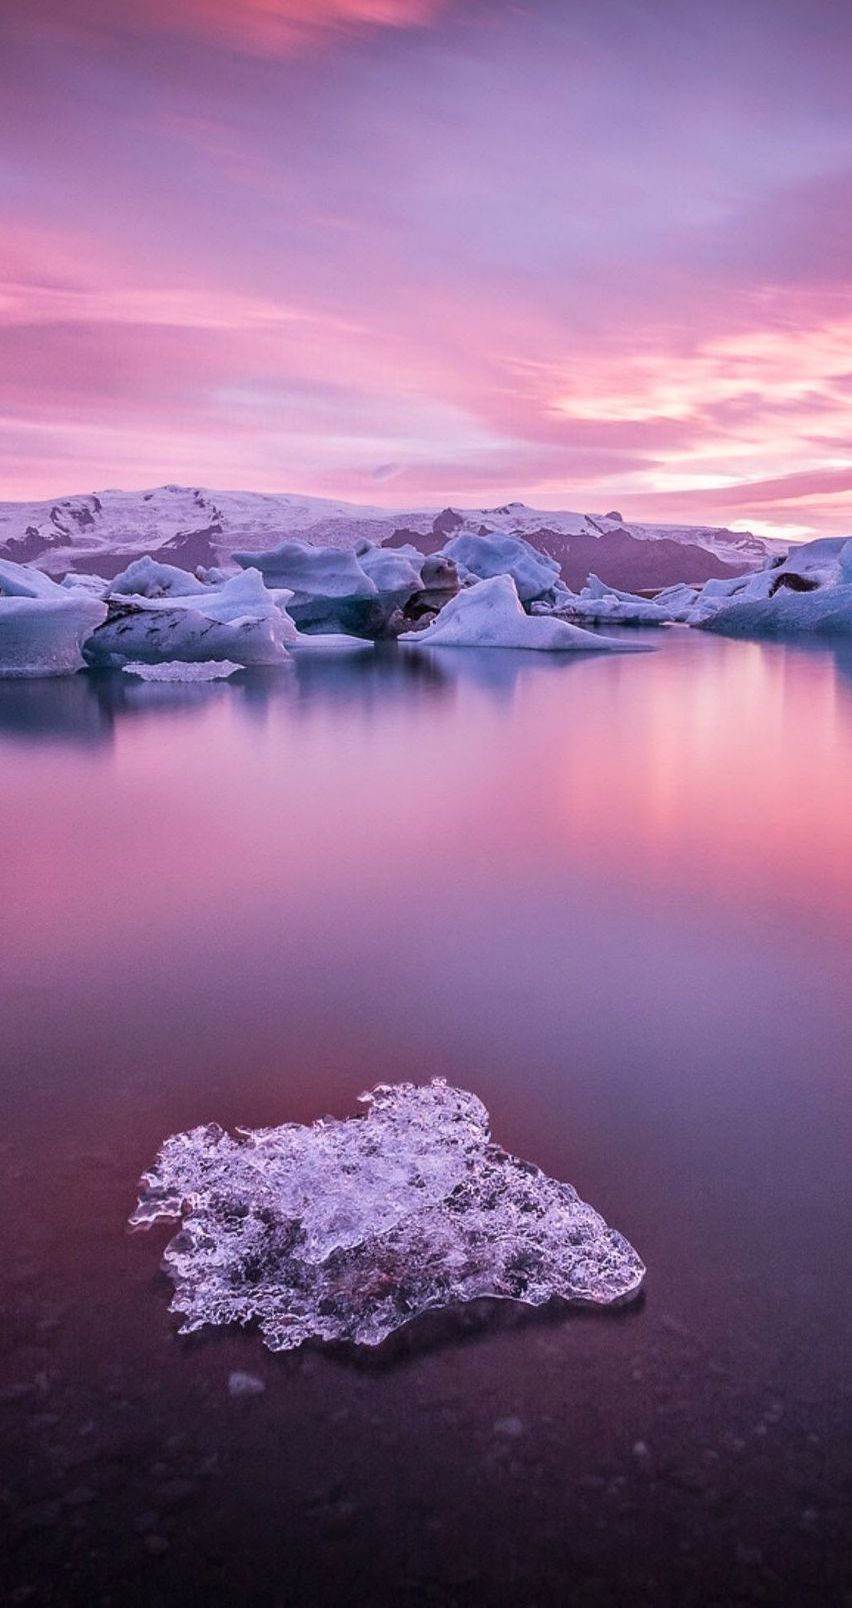 fond d'écran de paysage pour téléphone mobile,paysage naturel,la nature,ciel,océan arctique,lac glaciaire